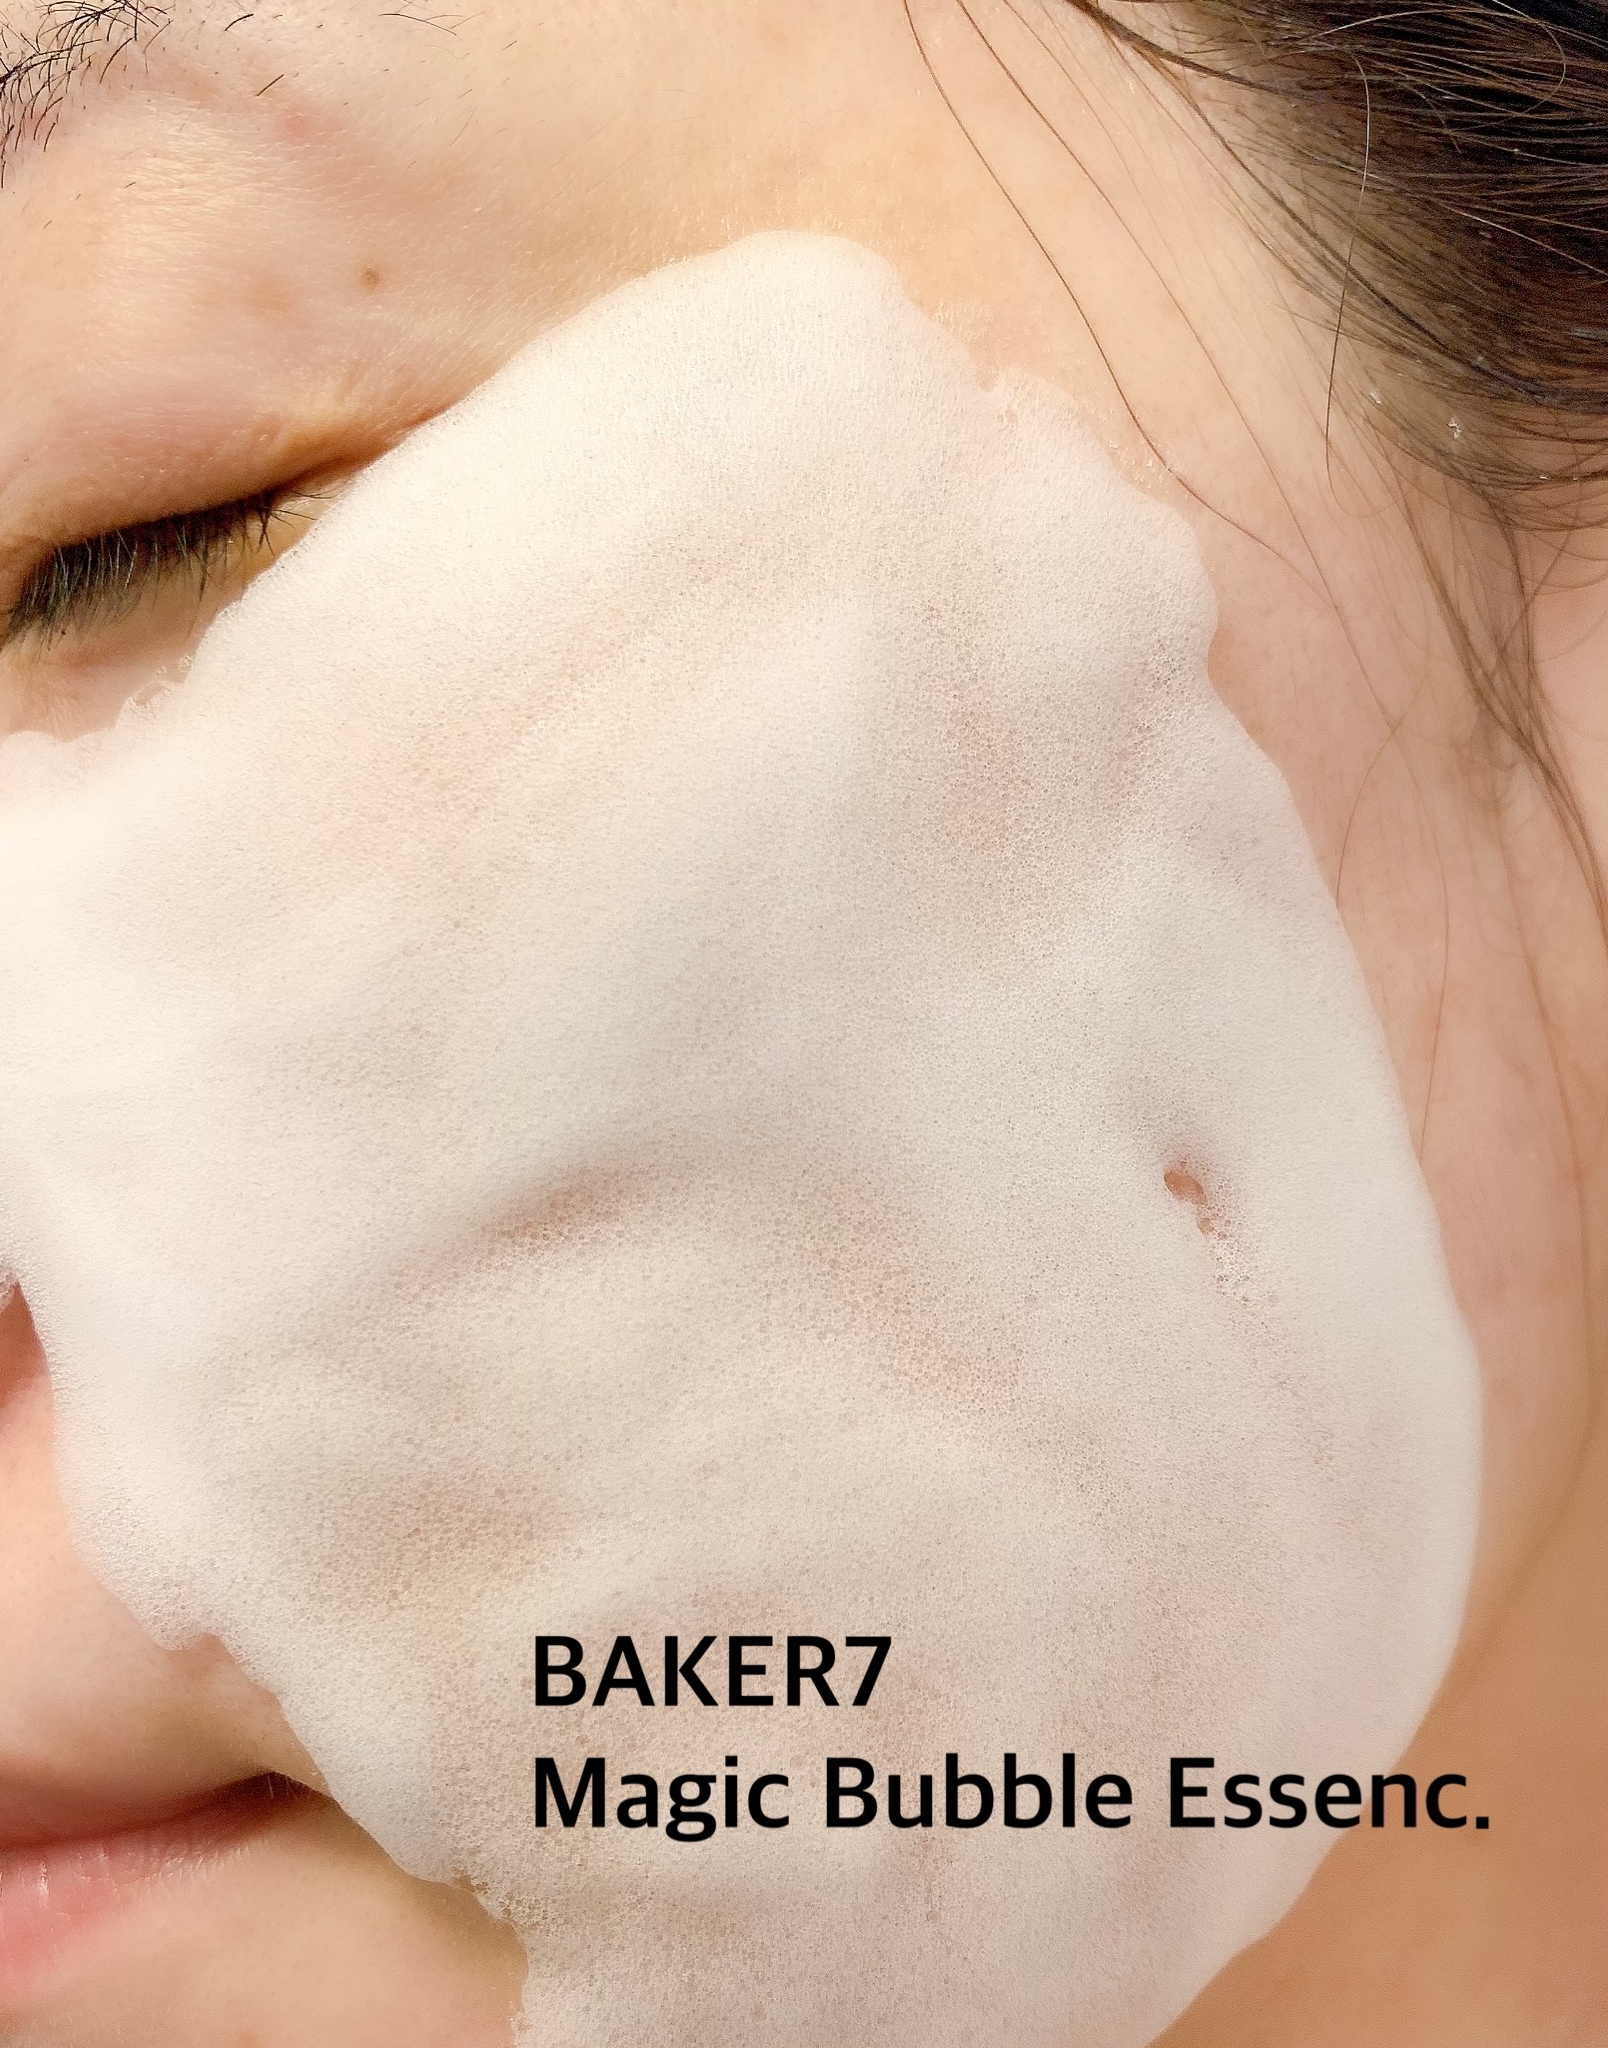 BAKER7(ベーカーセブン) マジックバブルエッセンスパック (ピンク)に関する日高あきさんの口コミ画像3